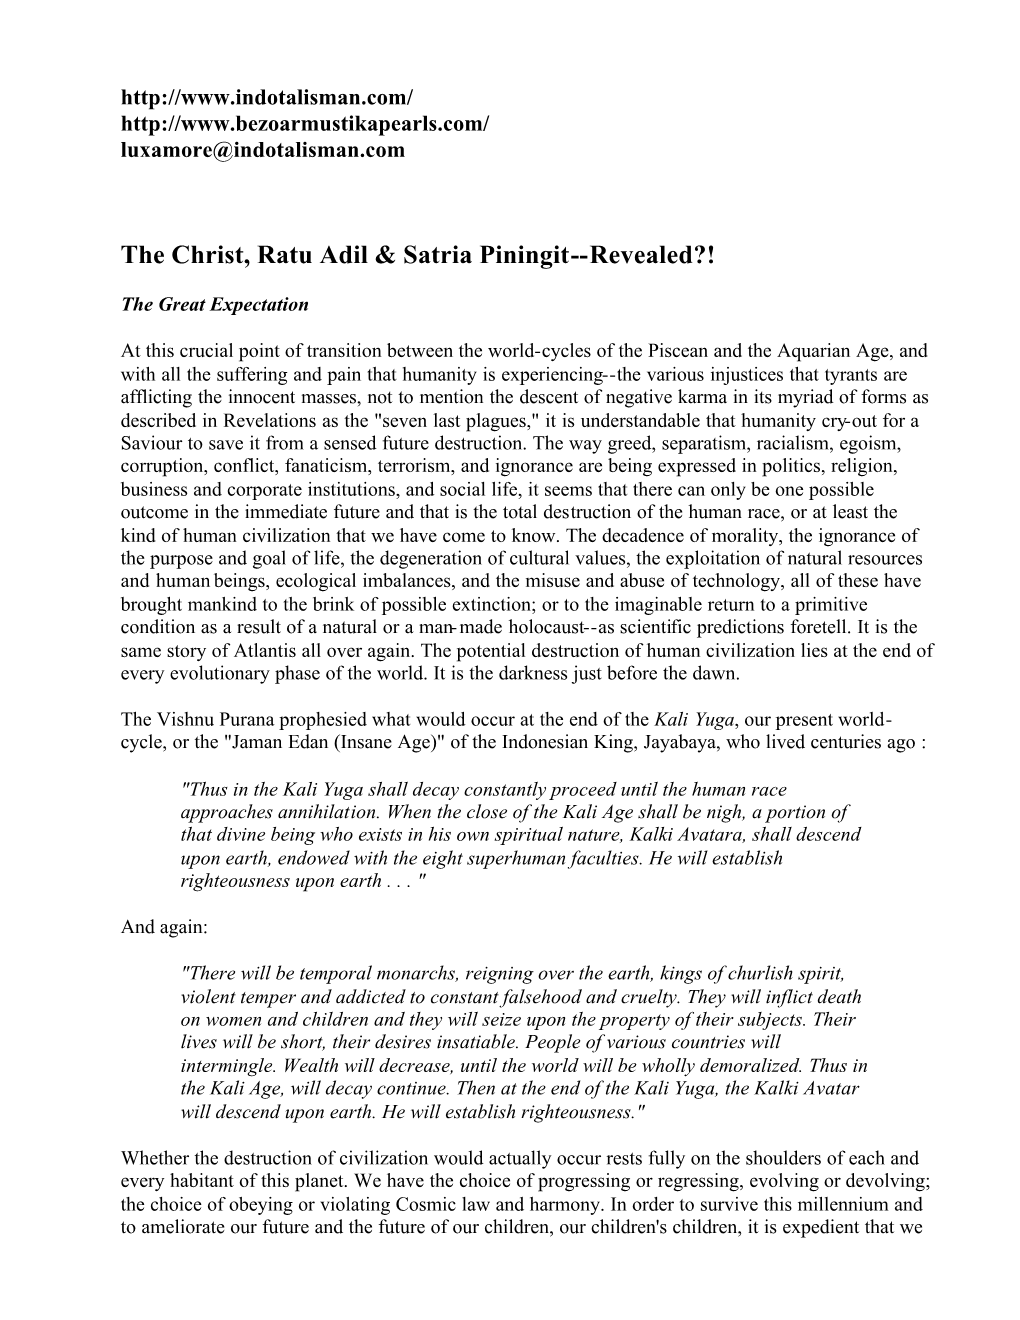 The Christ, Ratu Adil & Satria Piningit--Revealed?!